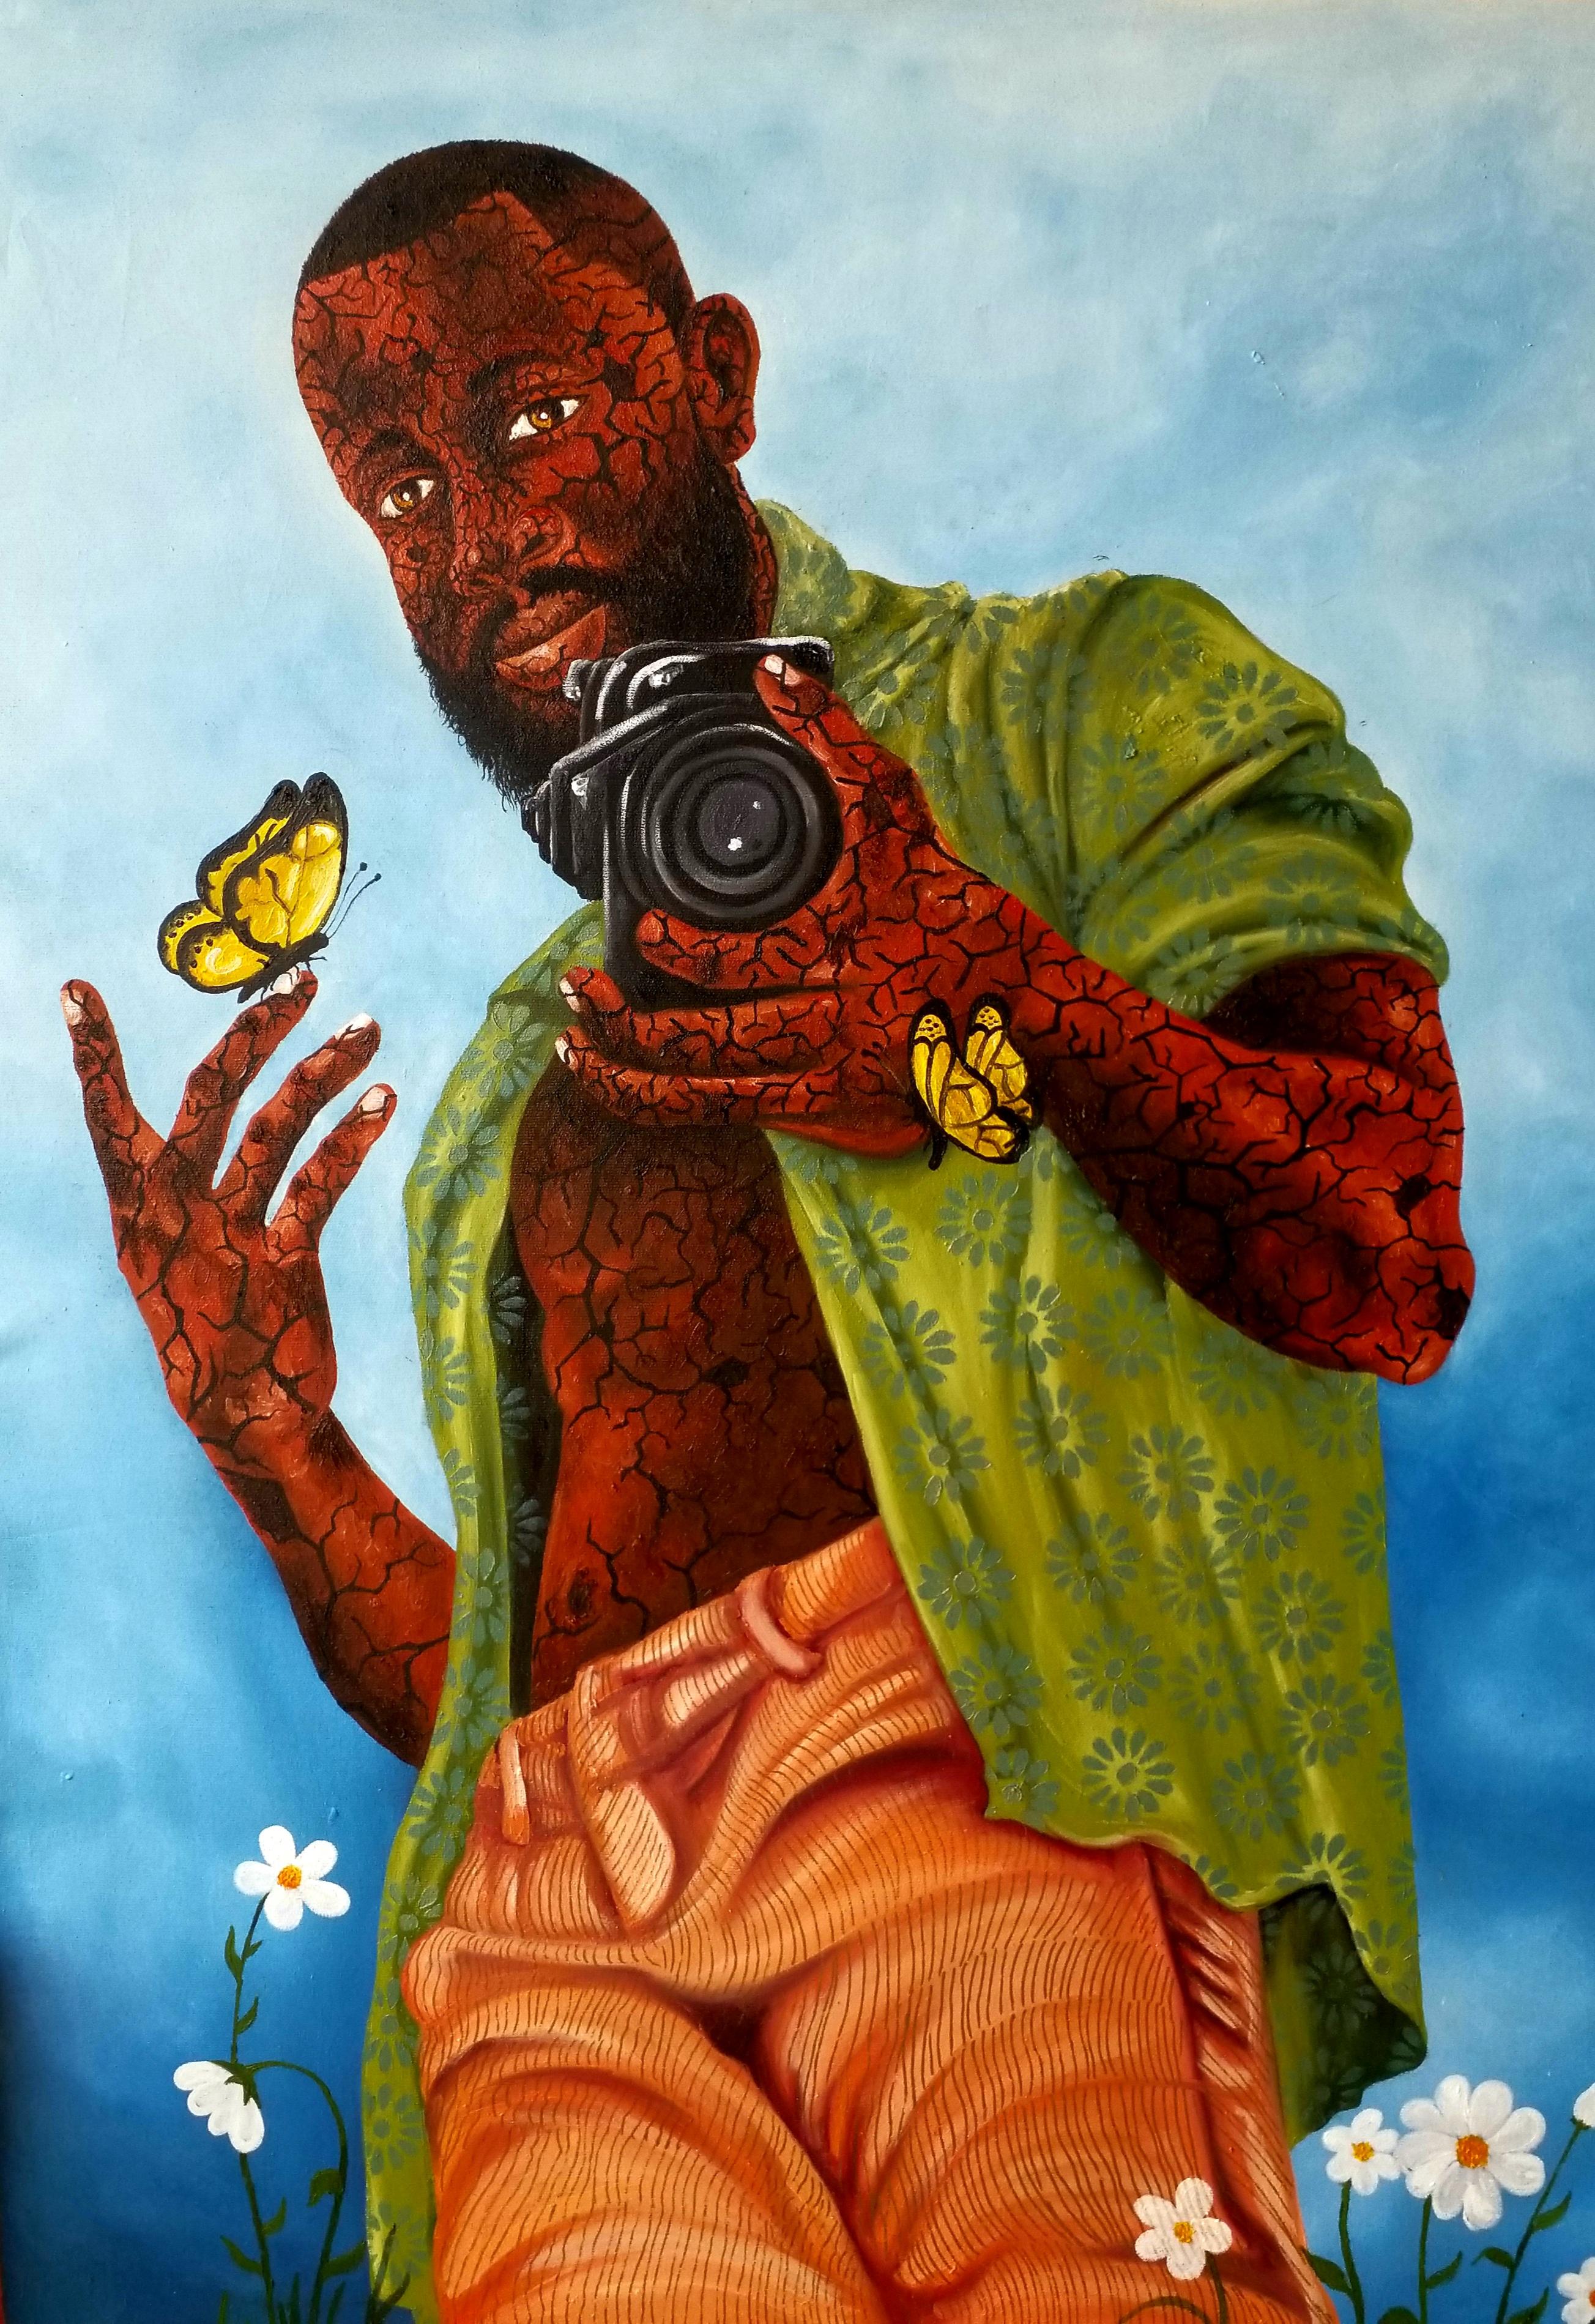 Muideen Abdulkadir Portrait Painting - Love, Passion and Nature